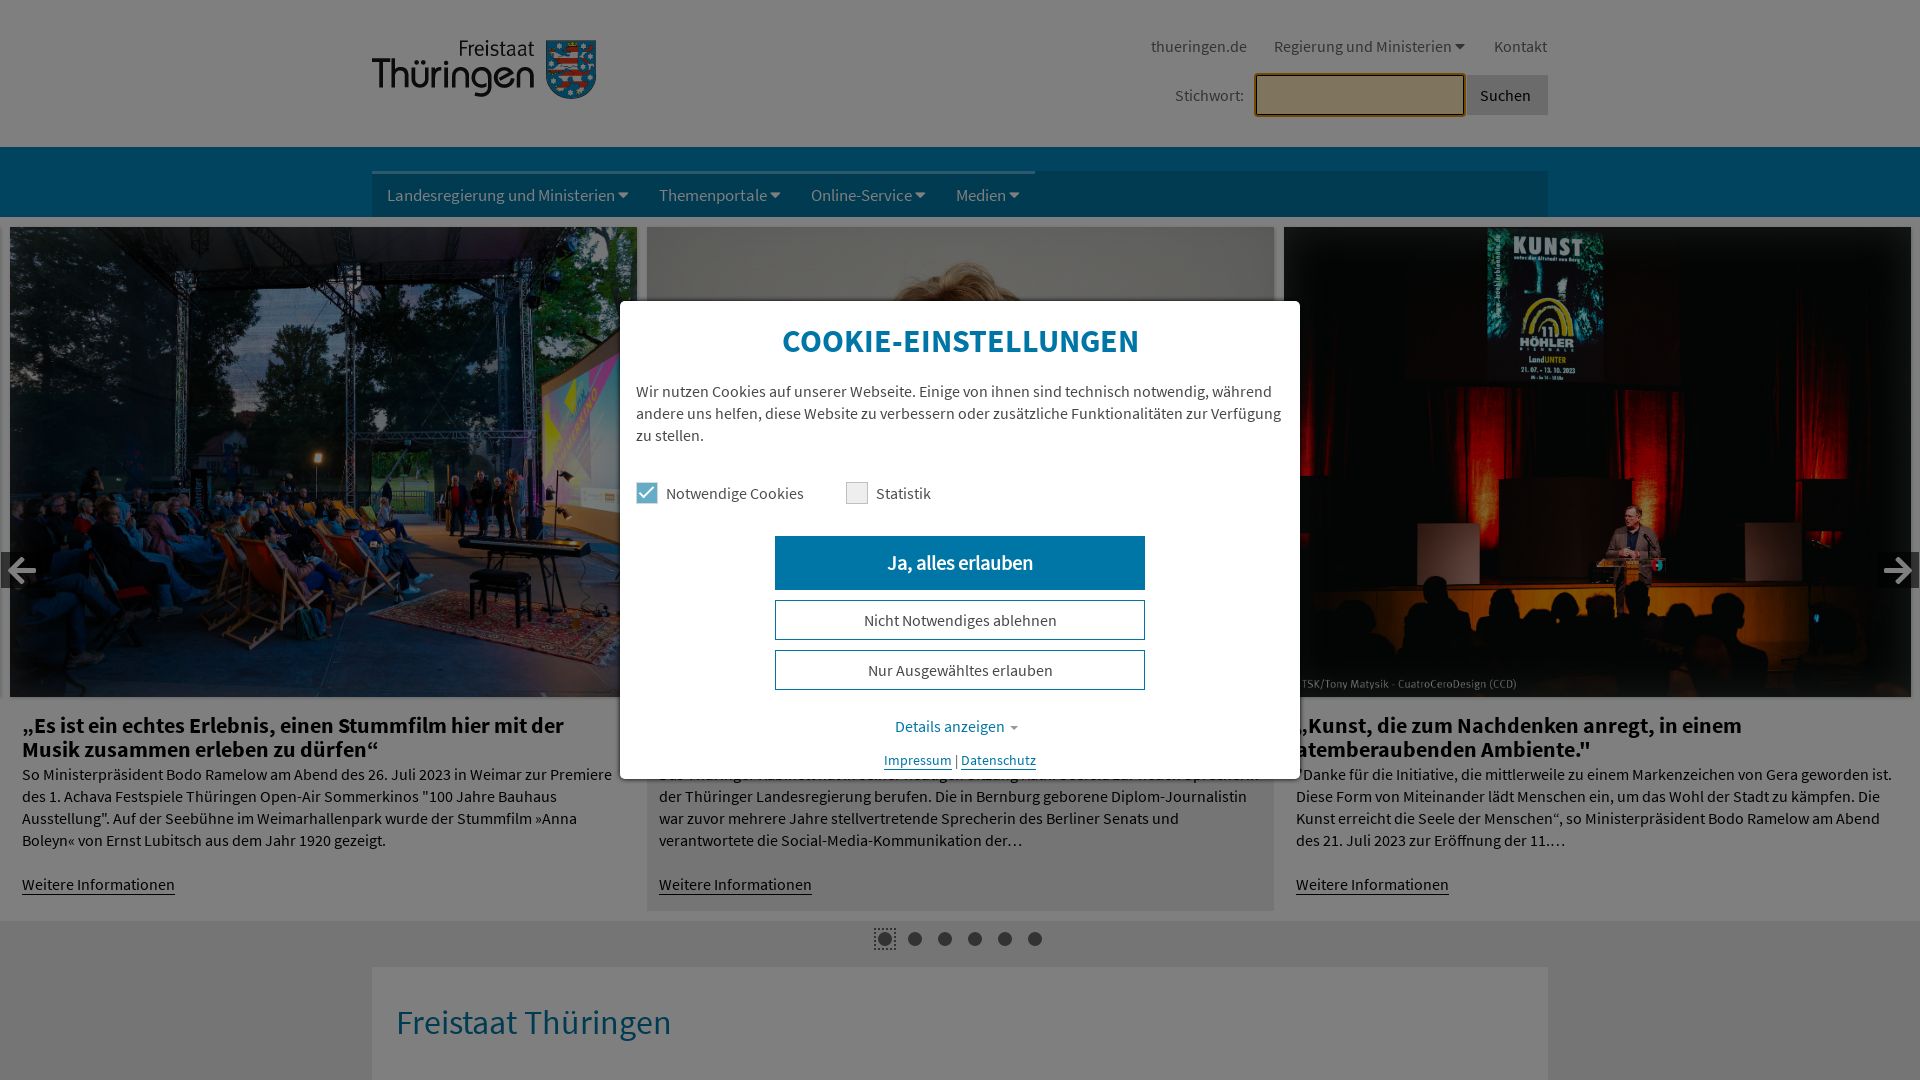 网站状态 thueringen.de 是  在线的